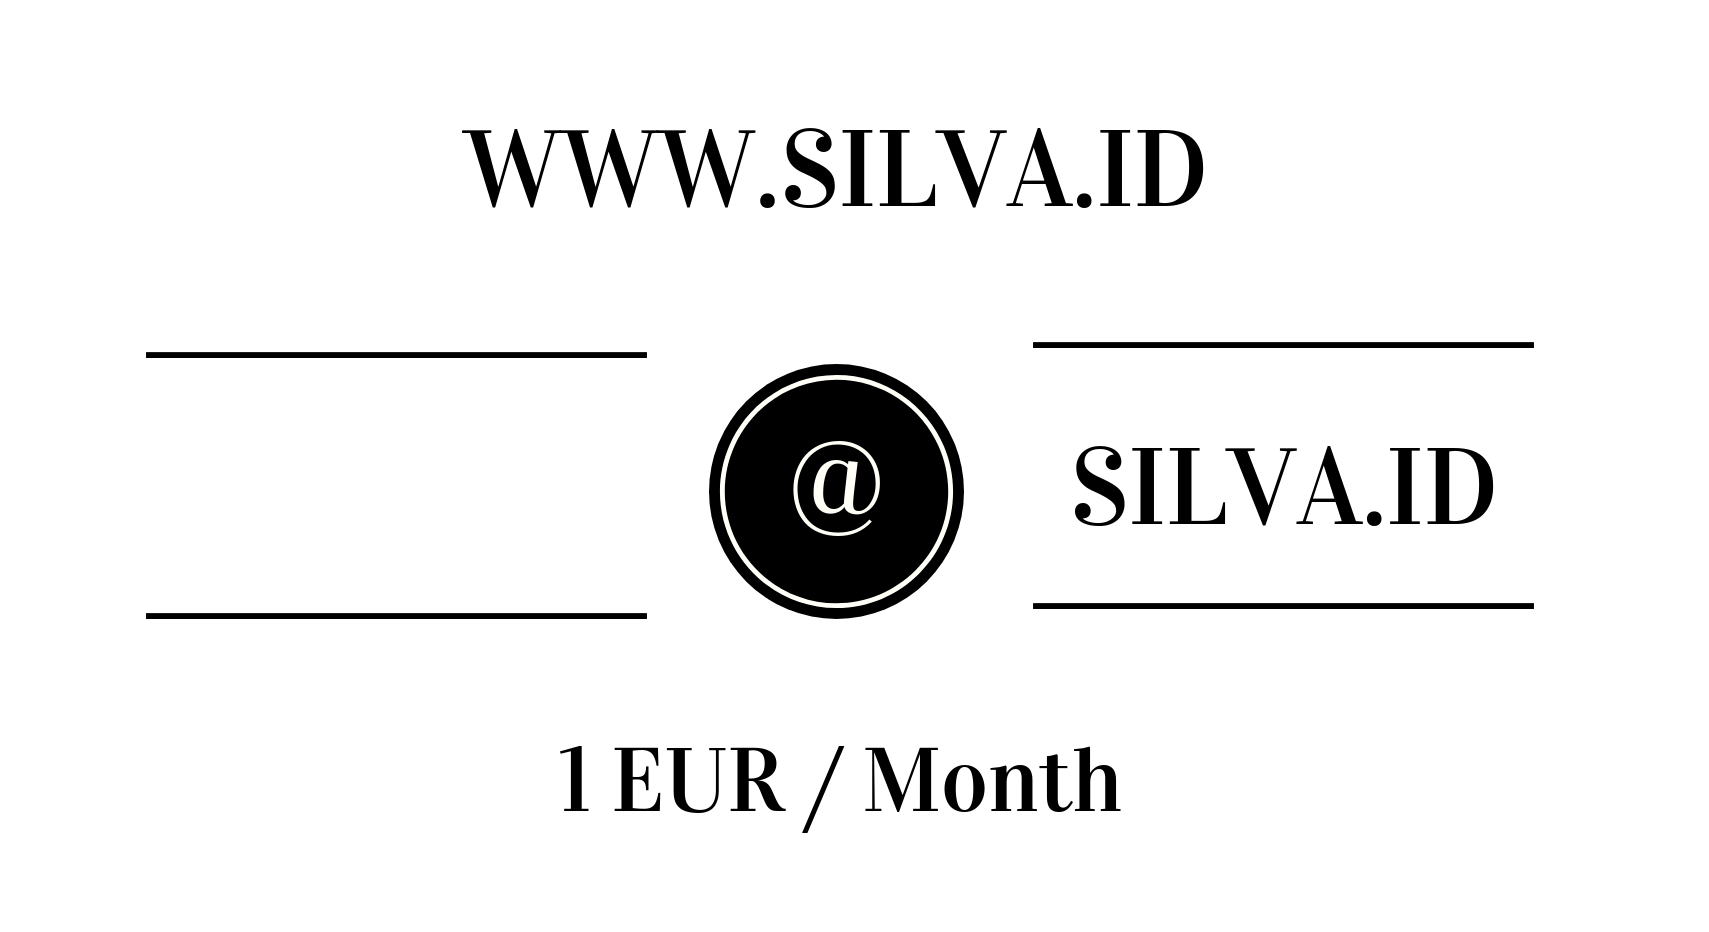 www.silva.id